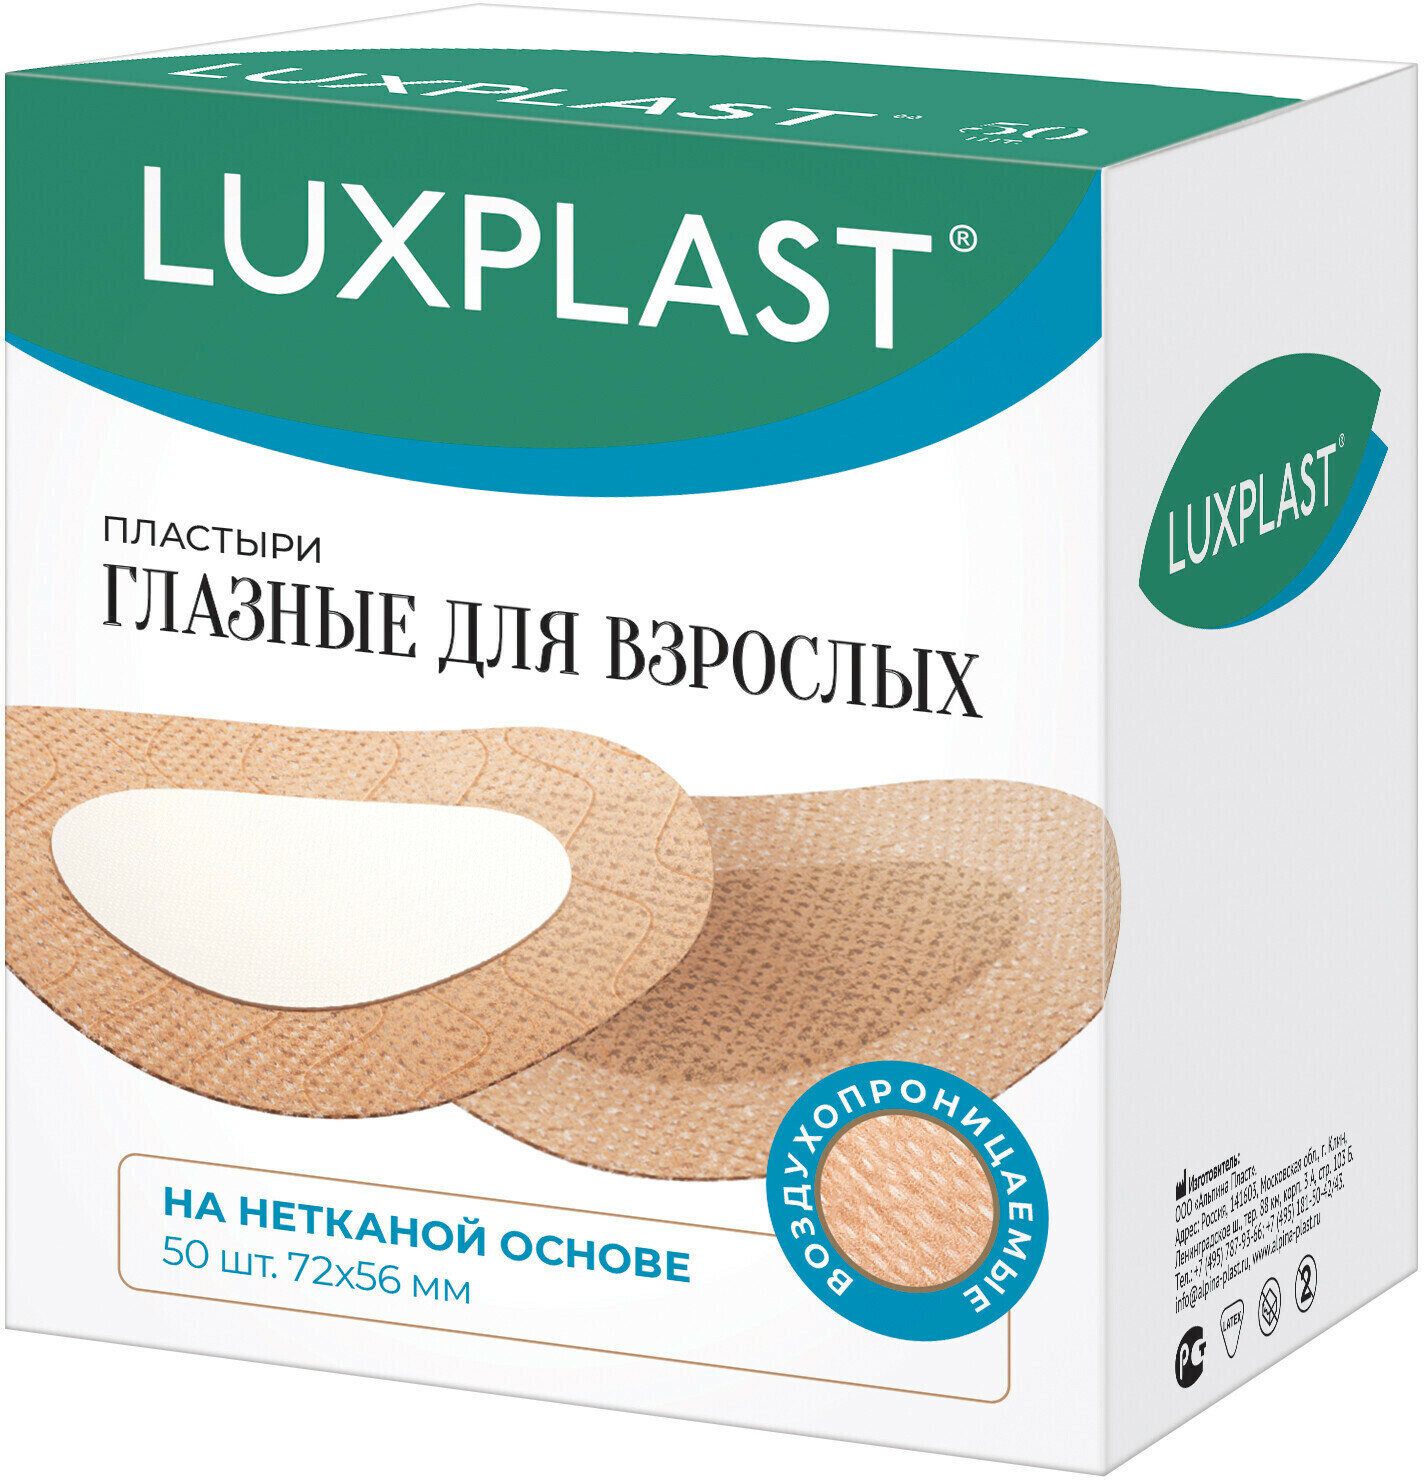 Пластыри LUXPLAST глазные для взрослых на нетканой(72 x 56 мм) - 50 шт.